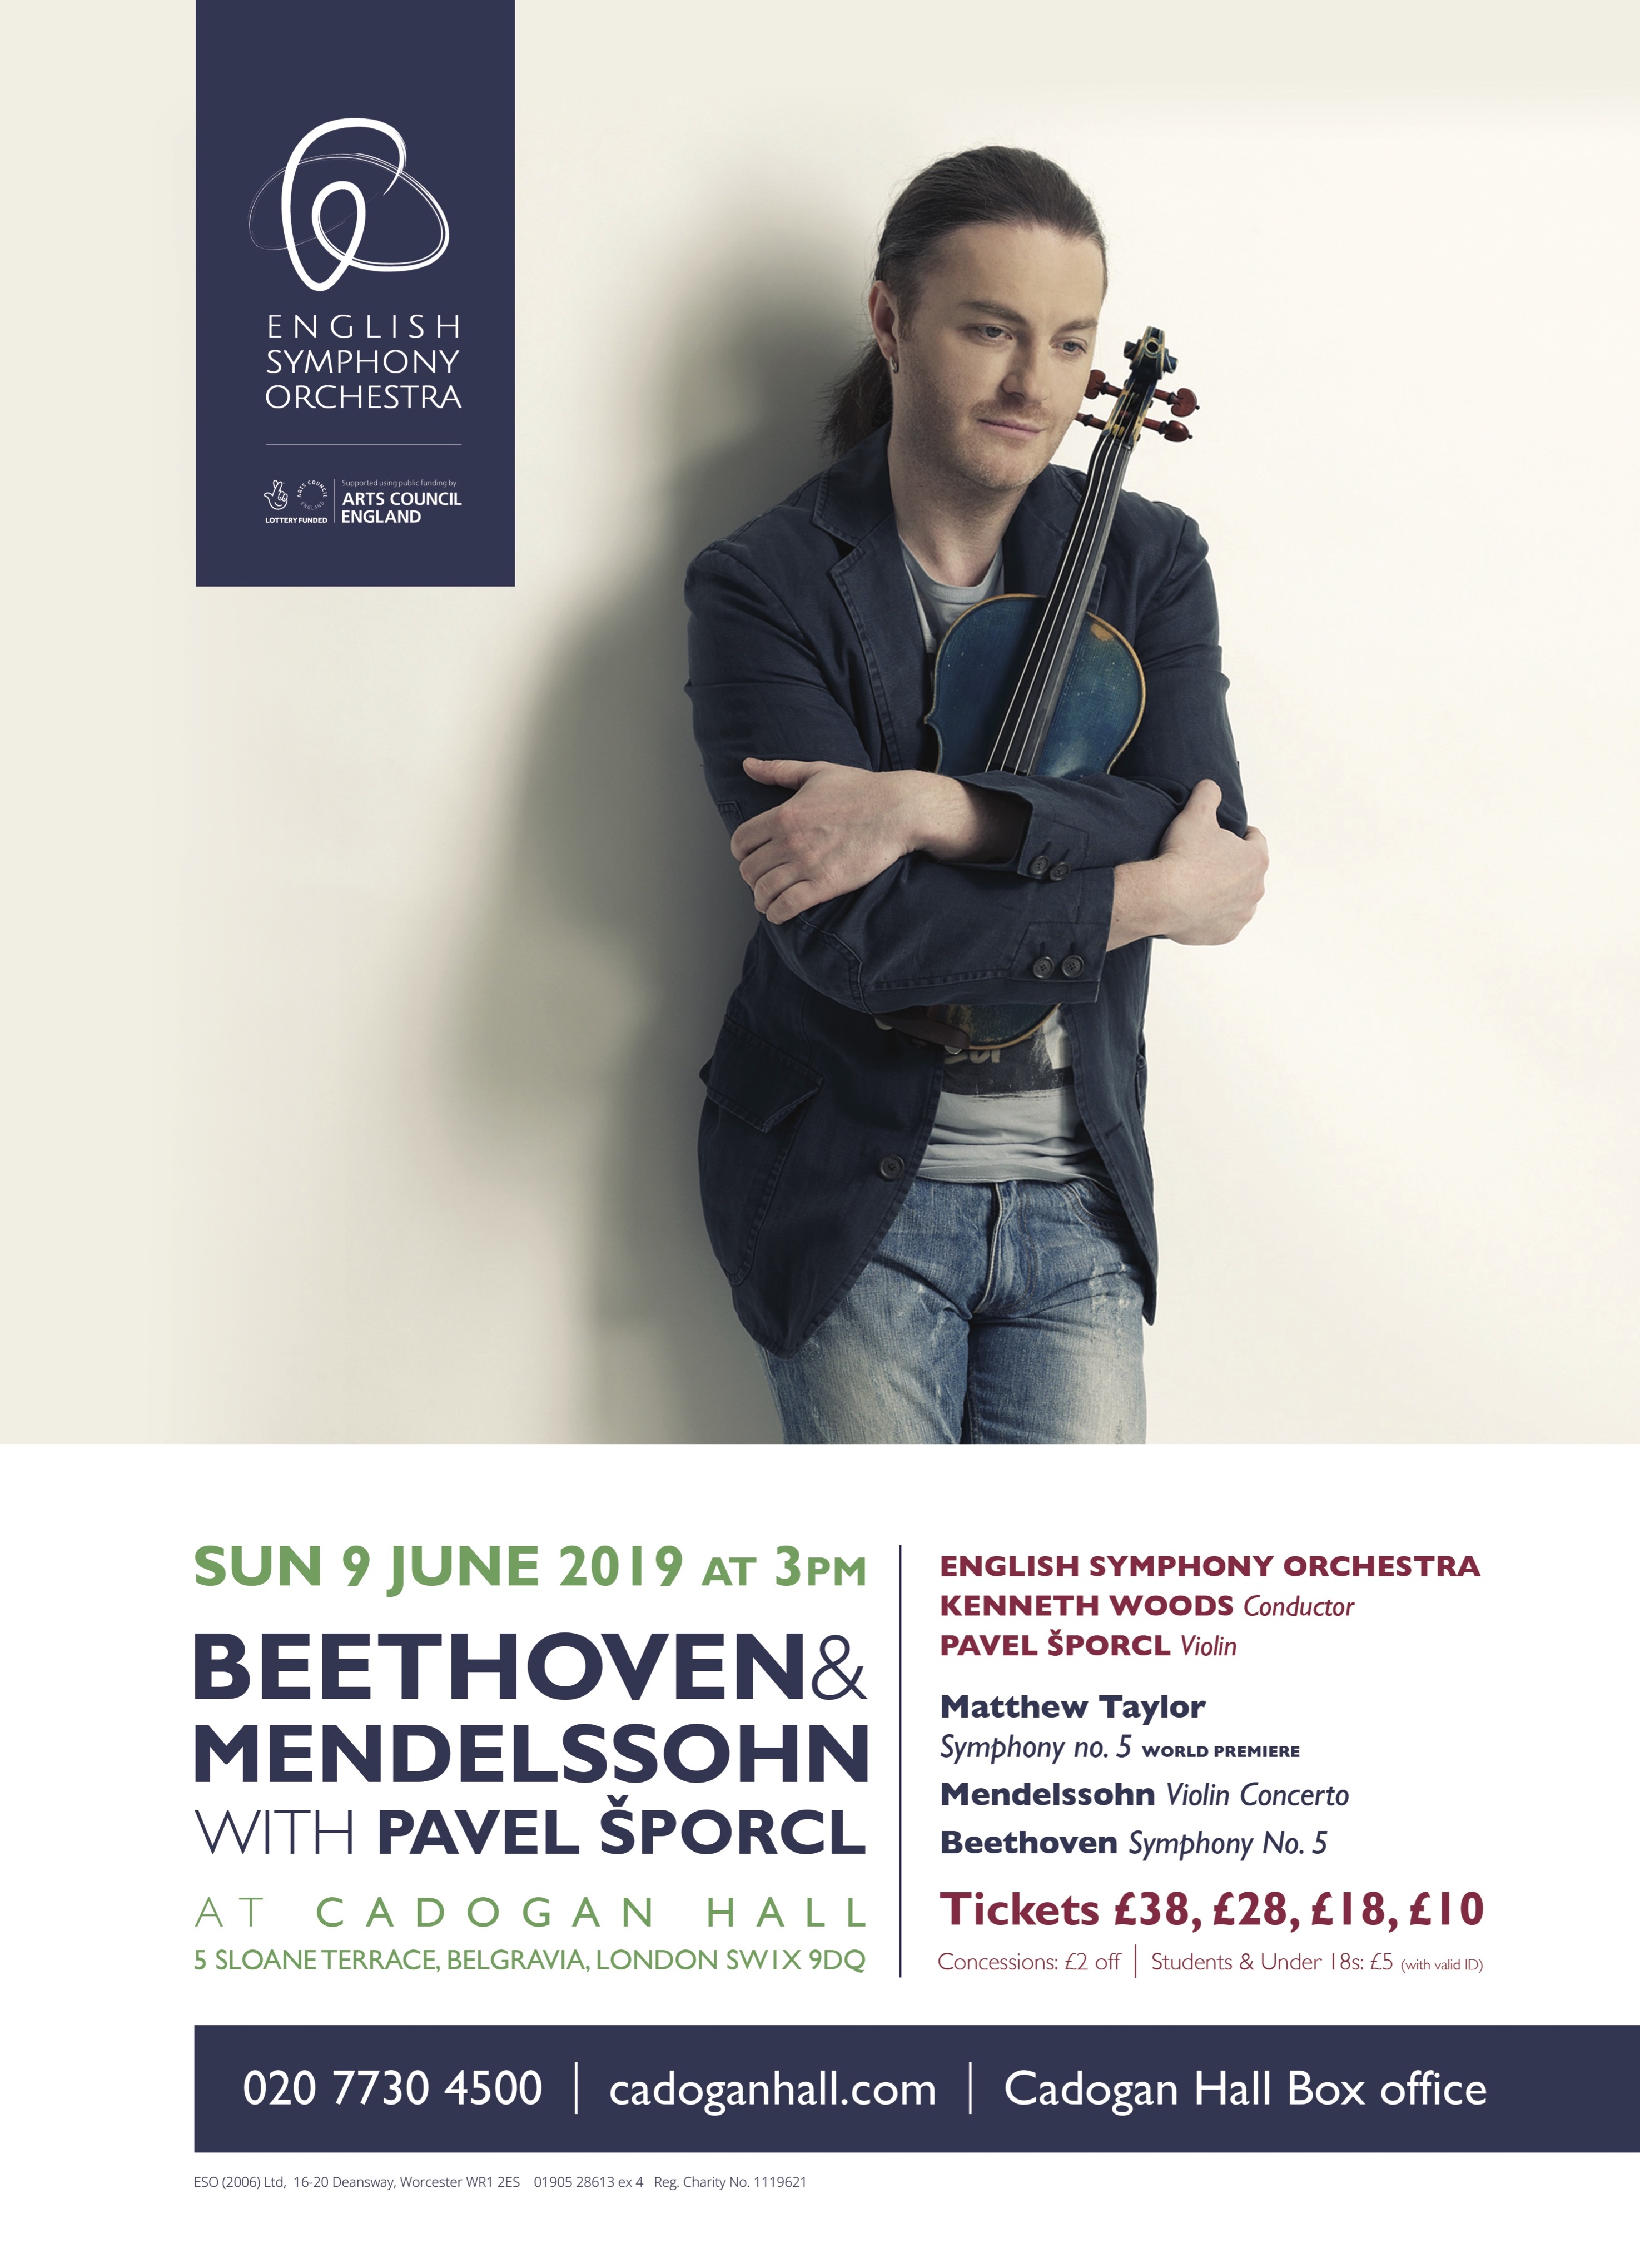 Explore the Score – Mendelssohn’s Violin Concerto in E minor